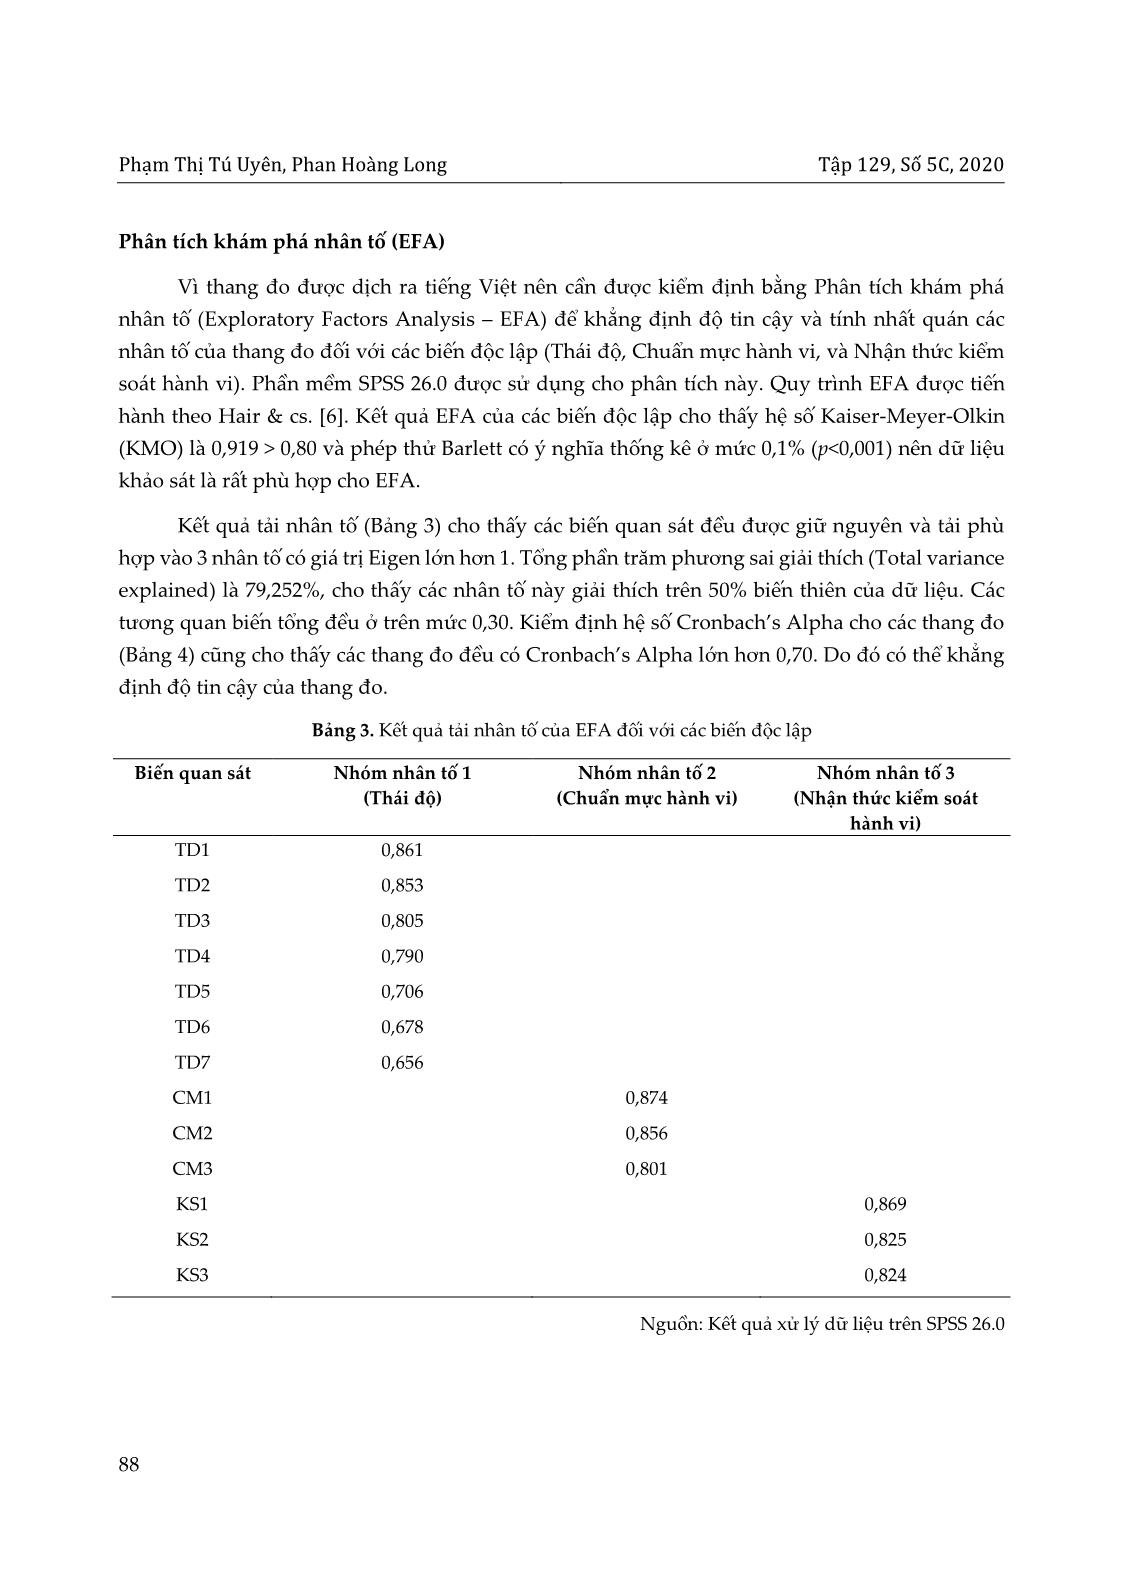 Ứng dụng lý thuyết hành vi dự định (TPB) trong nghiên cứu ý định lựa chọn khách sạn xanh của du khách tại thành phố Đà Nẵng trang 8